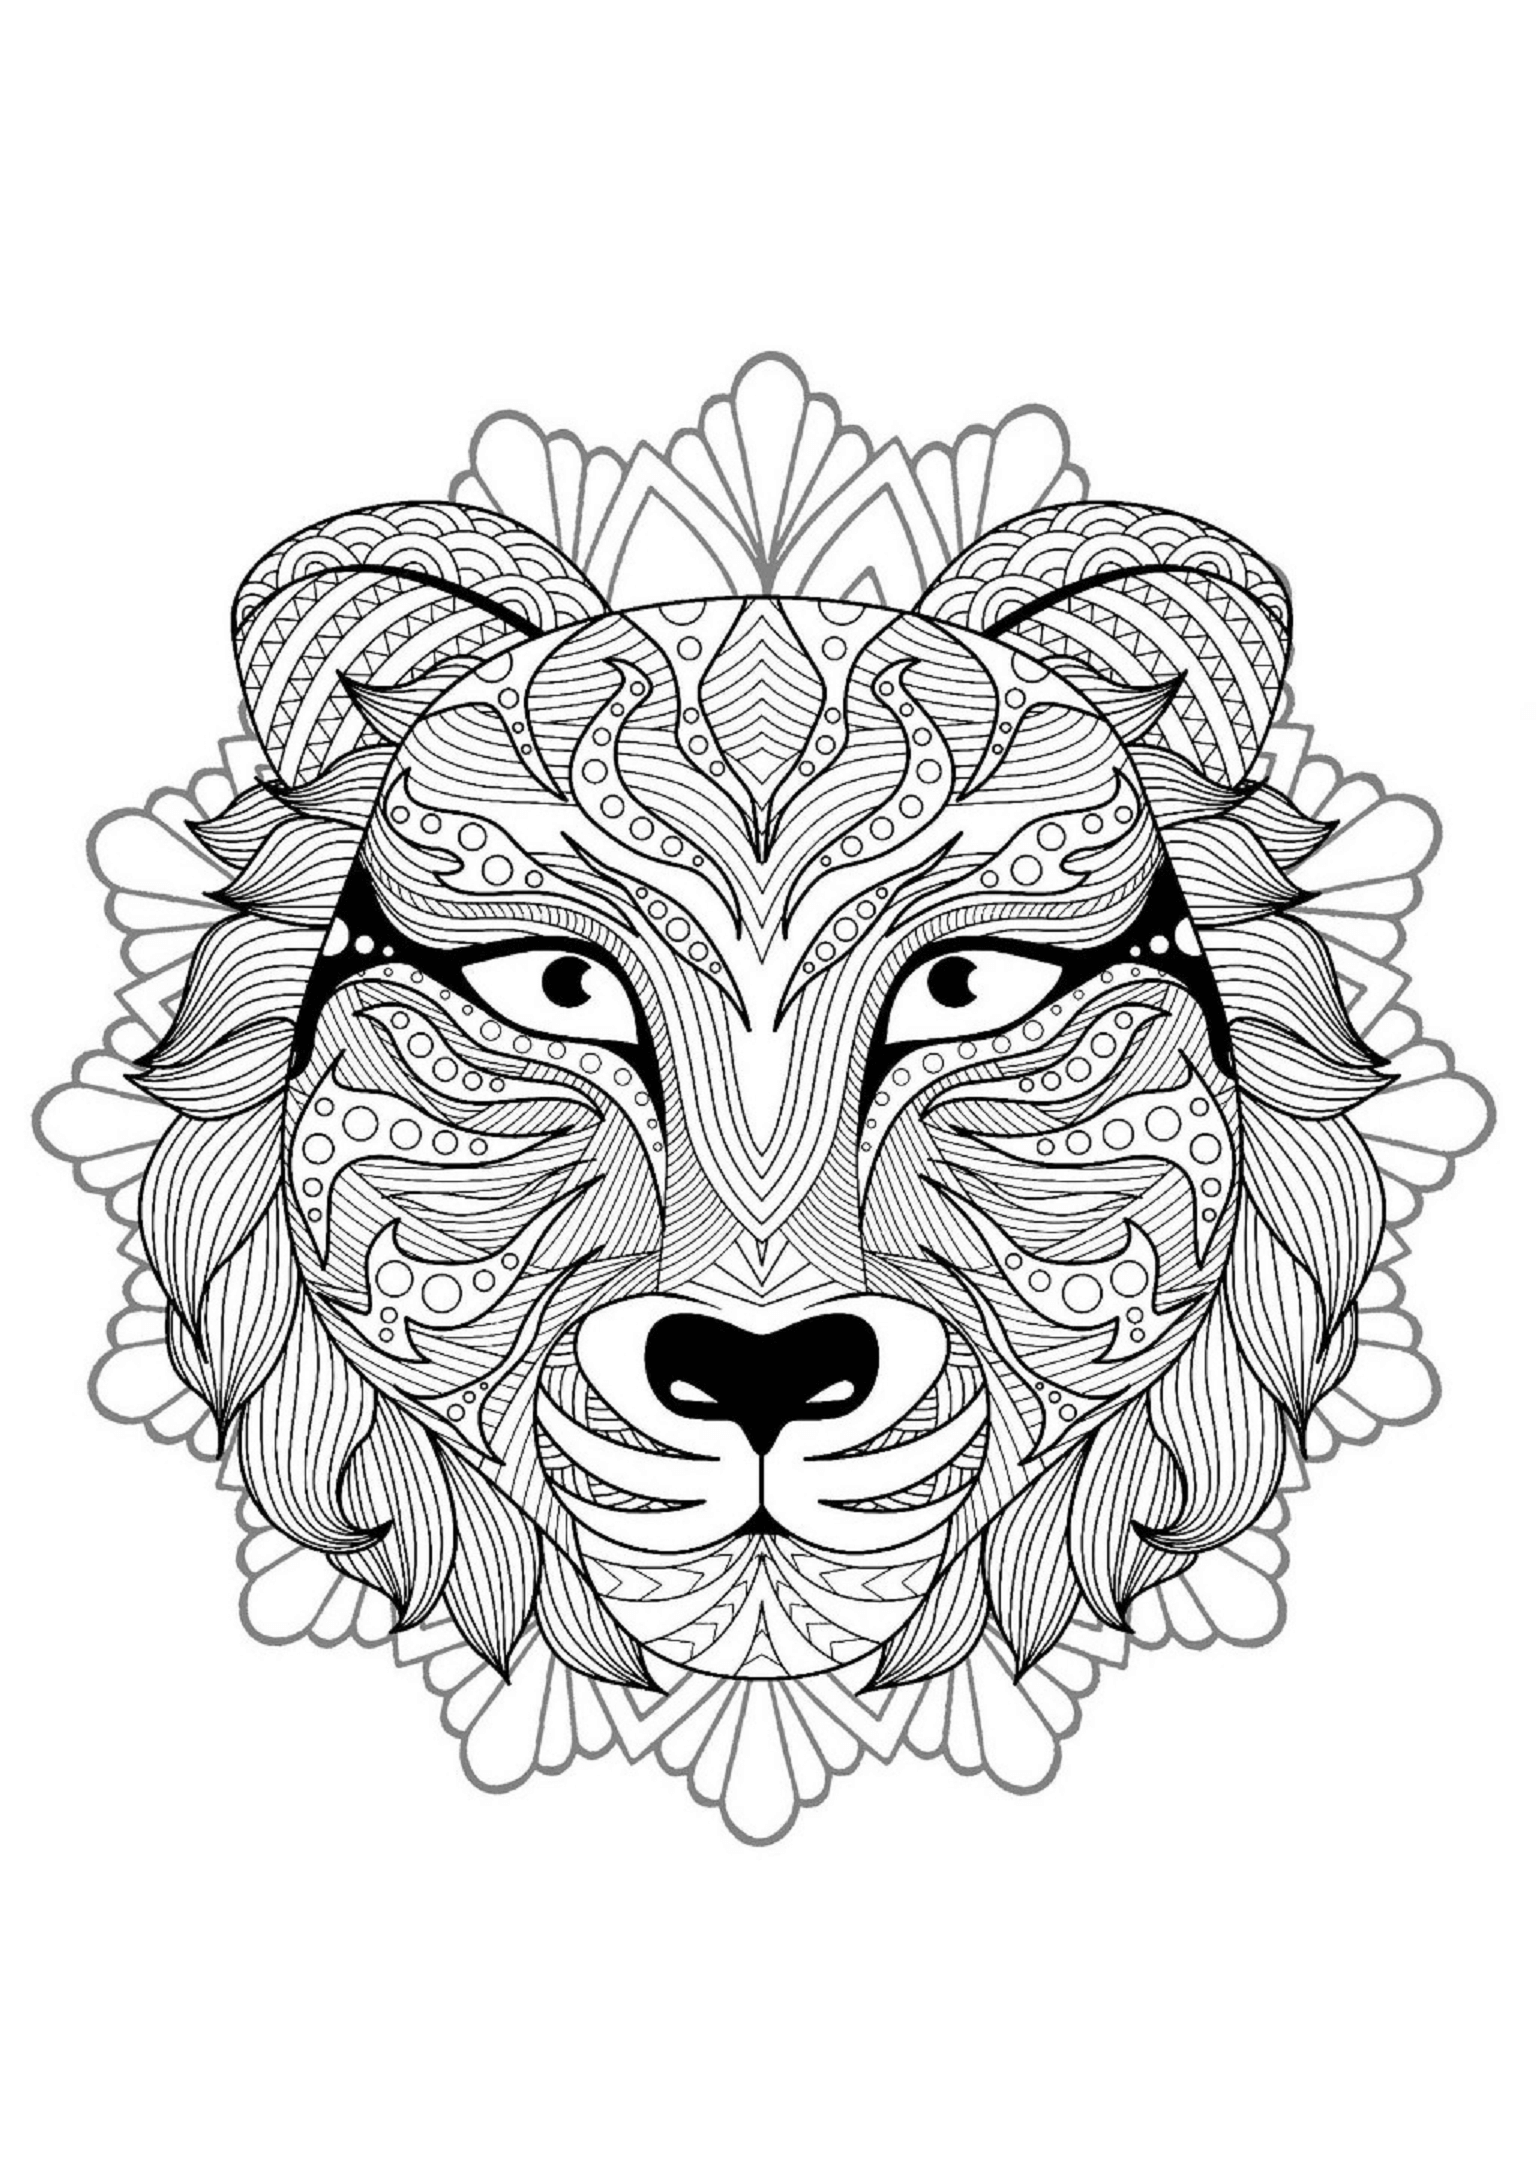 Mandala Tiger Head Coloring Page Mandalas